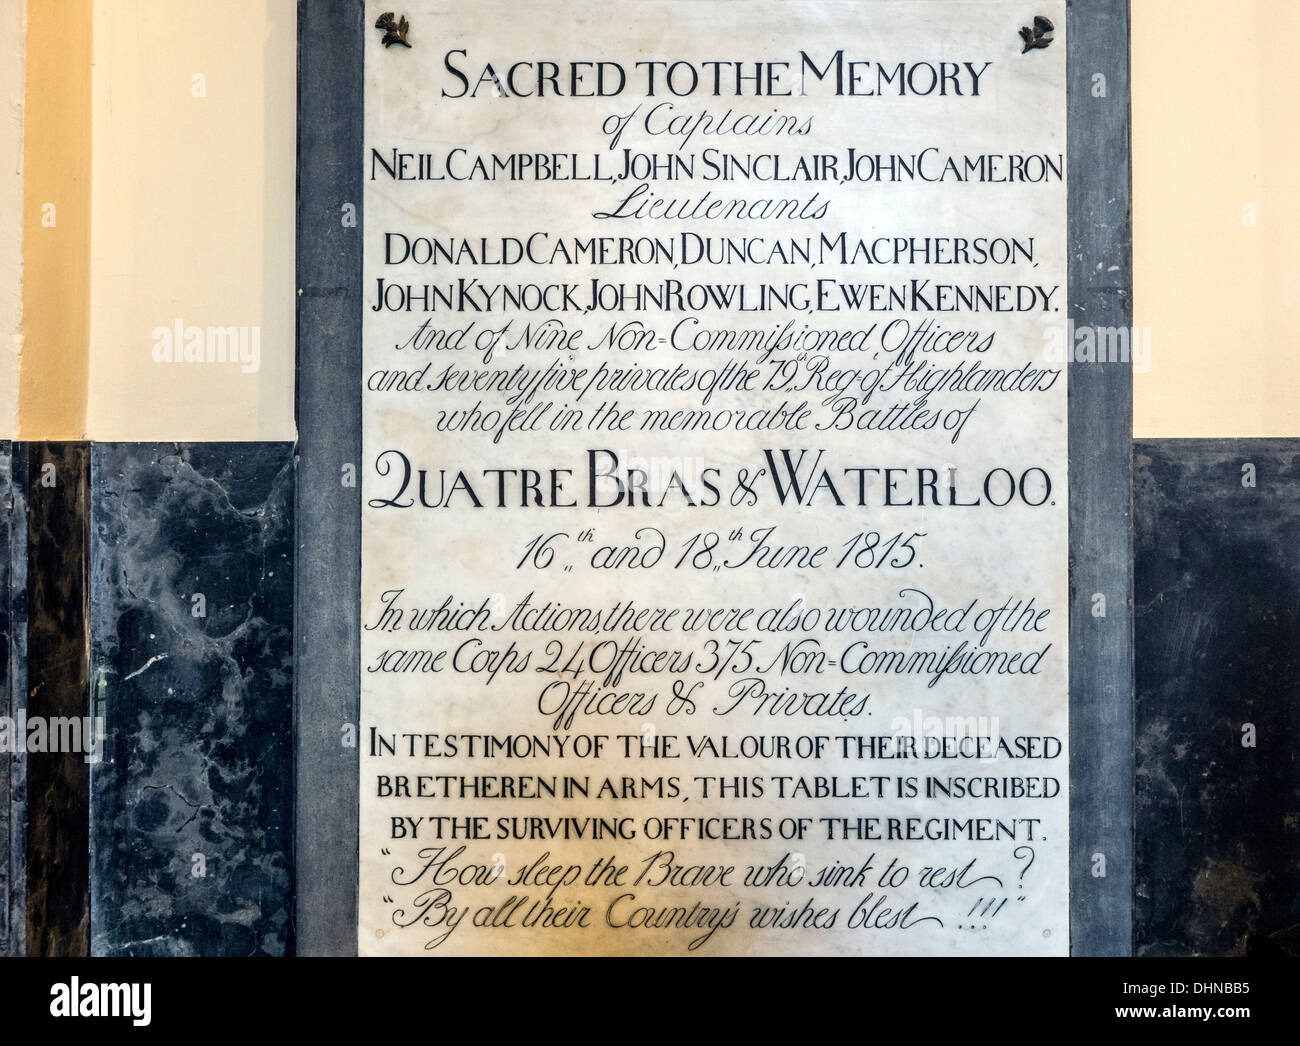 Plaque commémorative à la mémoire des officiers britanniques qui sont tombés pendant la bataille de Waterloo dans l'église, Belgique Banque D'Images